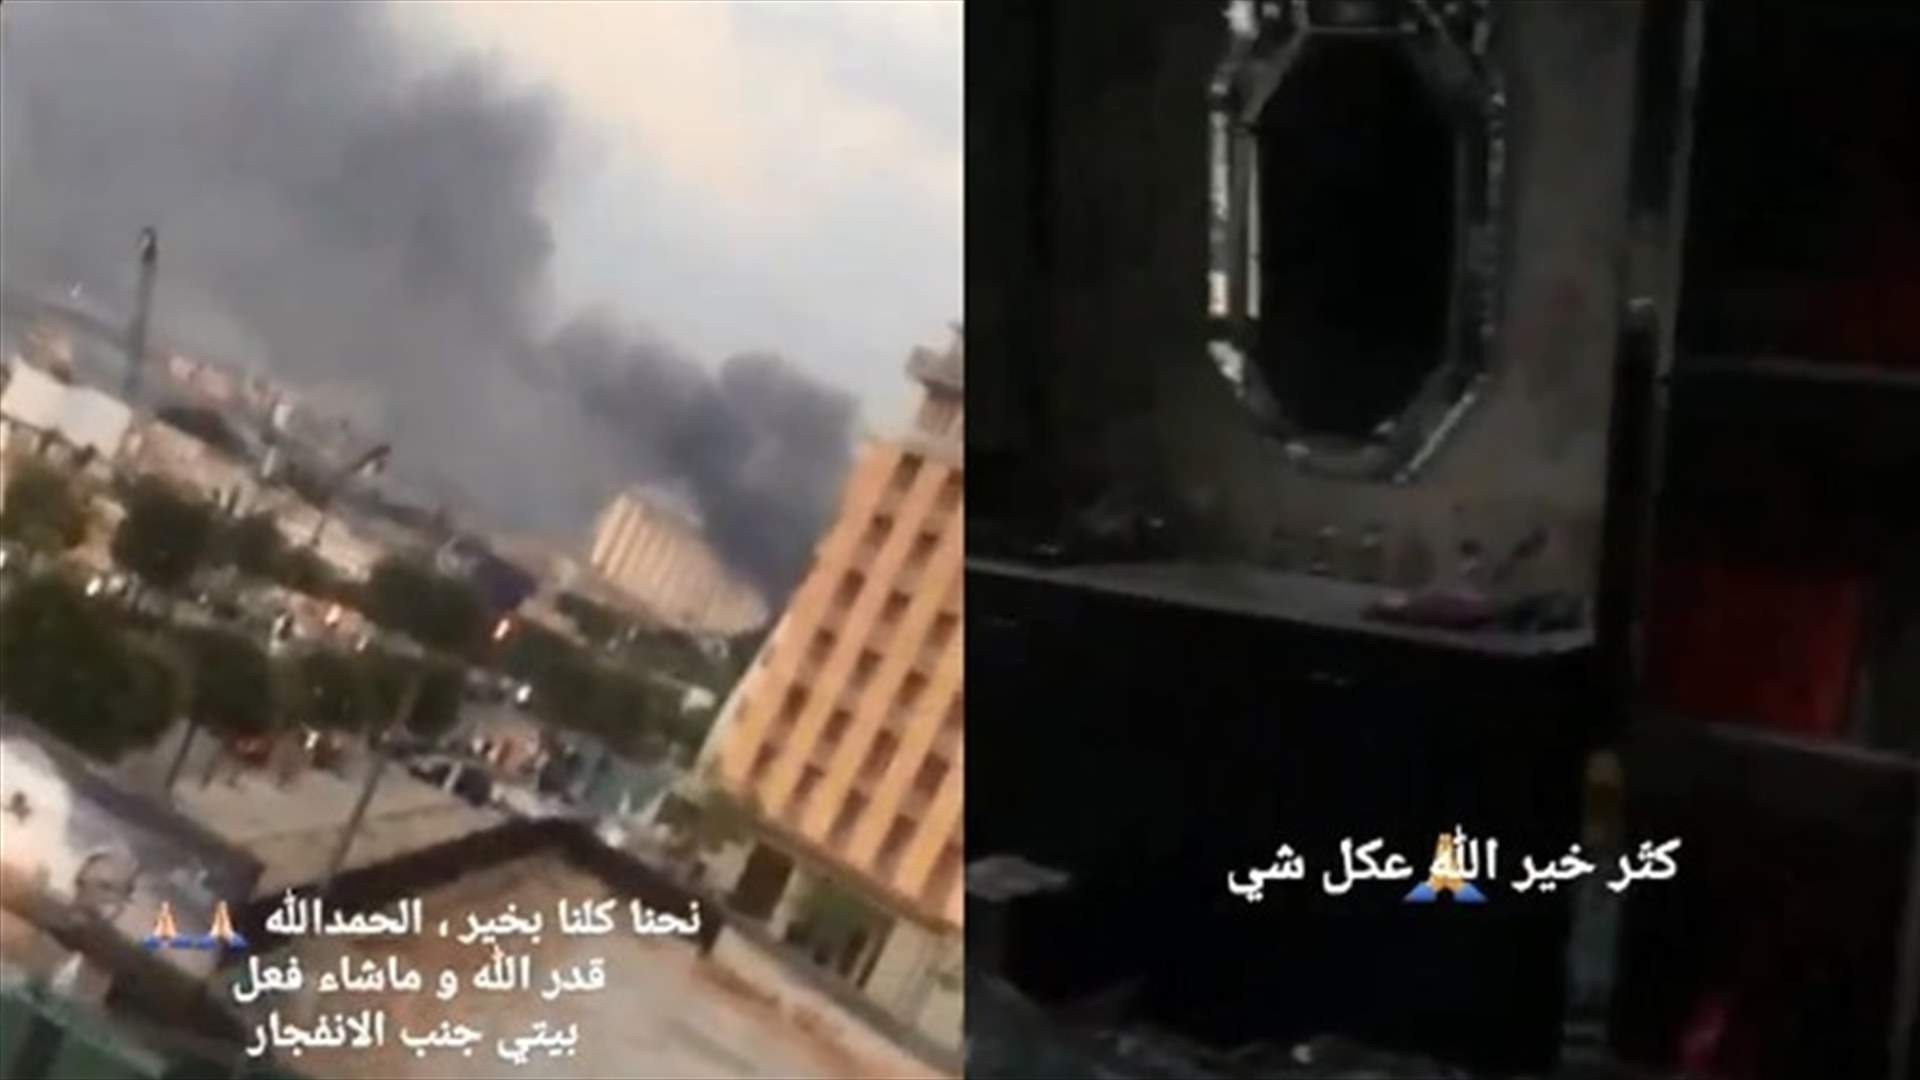 هيفاء وهبي تنشر لقطات من منزلها المتضرّر: بيتي قرب الإنفجار